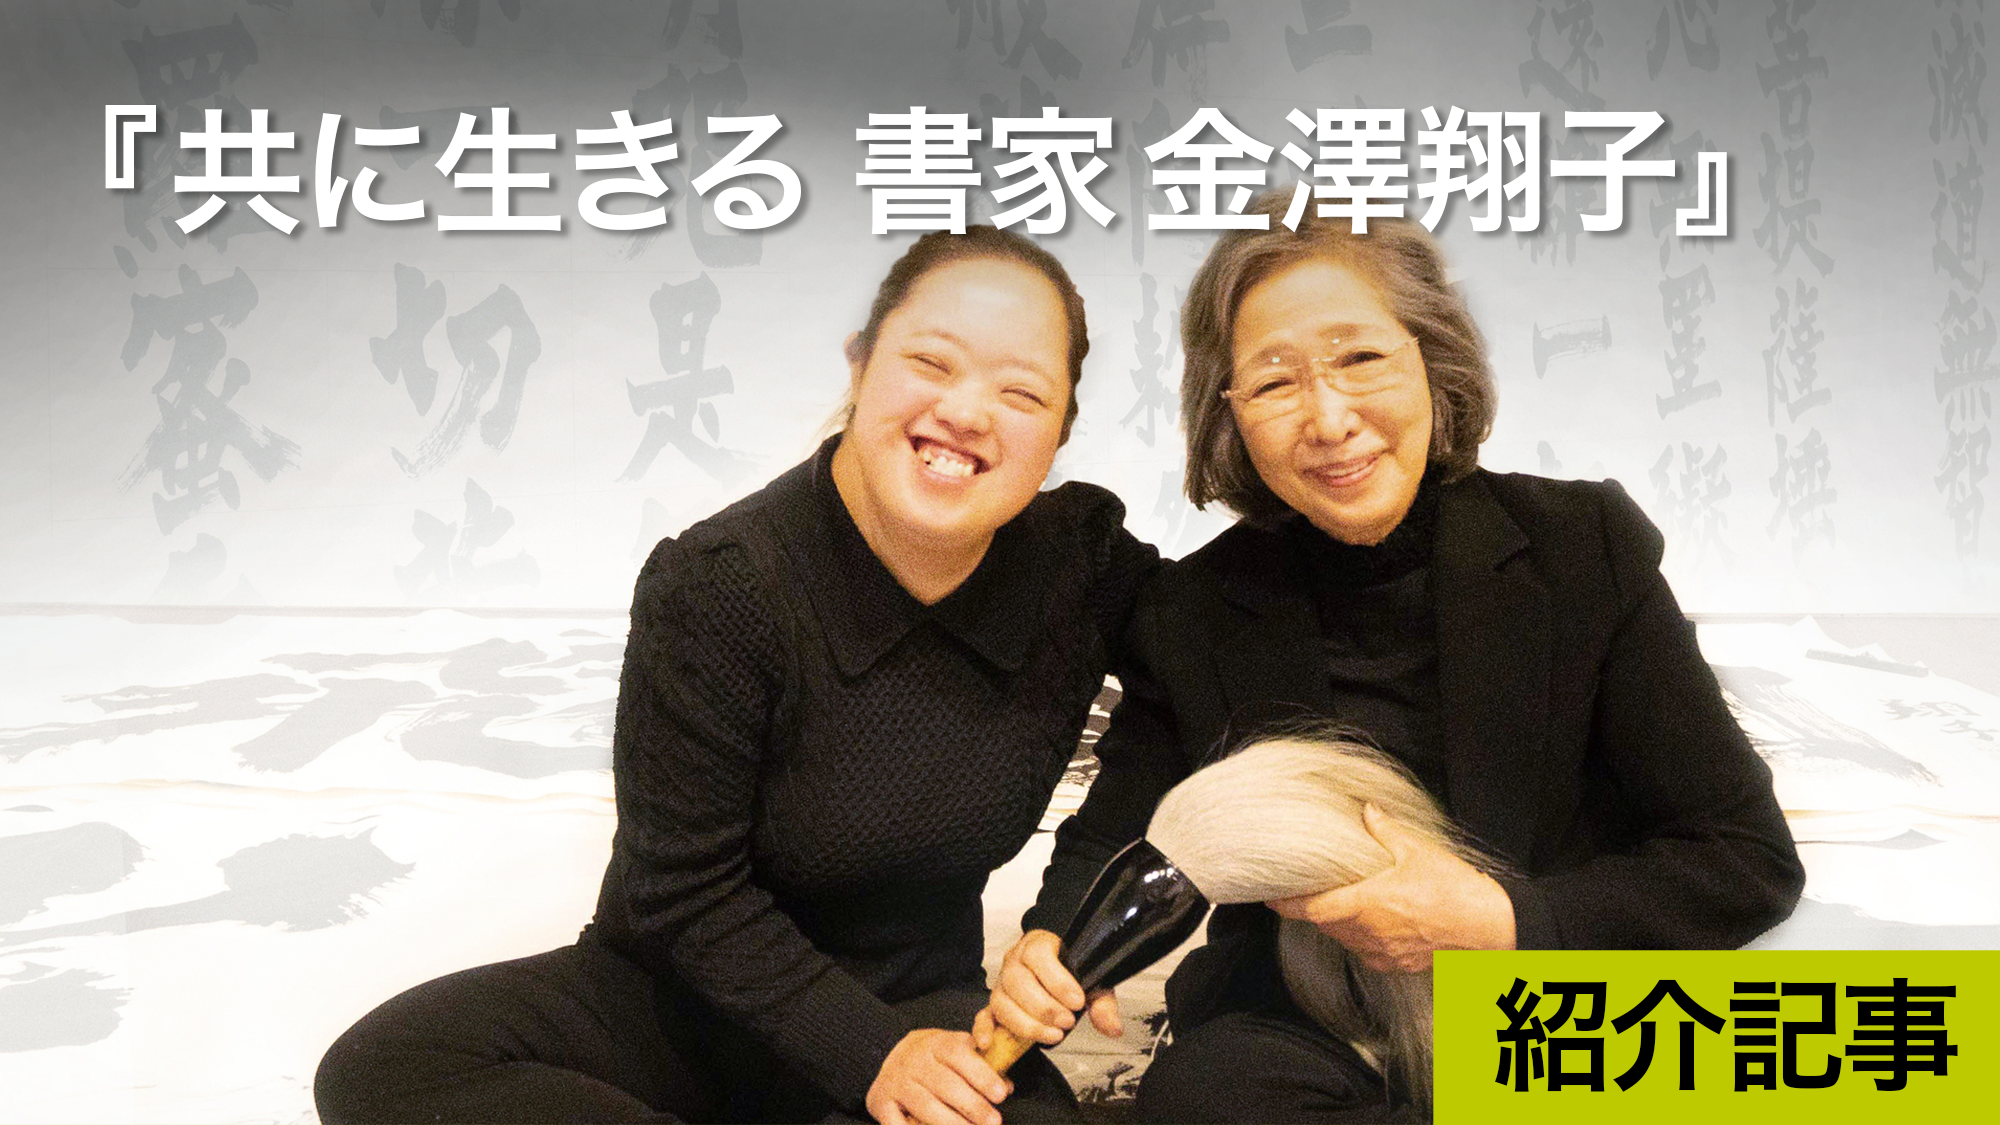 『共に生きる 書家金澤翔子』天才書家・金澤翔子とその母親泰子のダウン症の子を持つ覚悟を見る映画